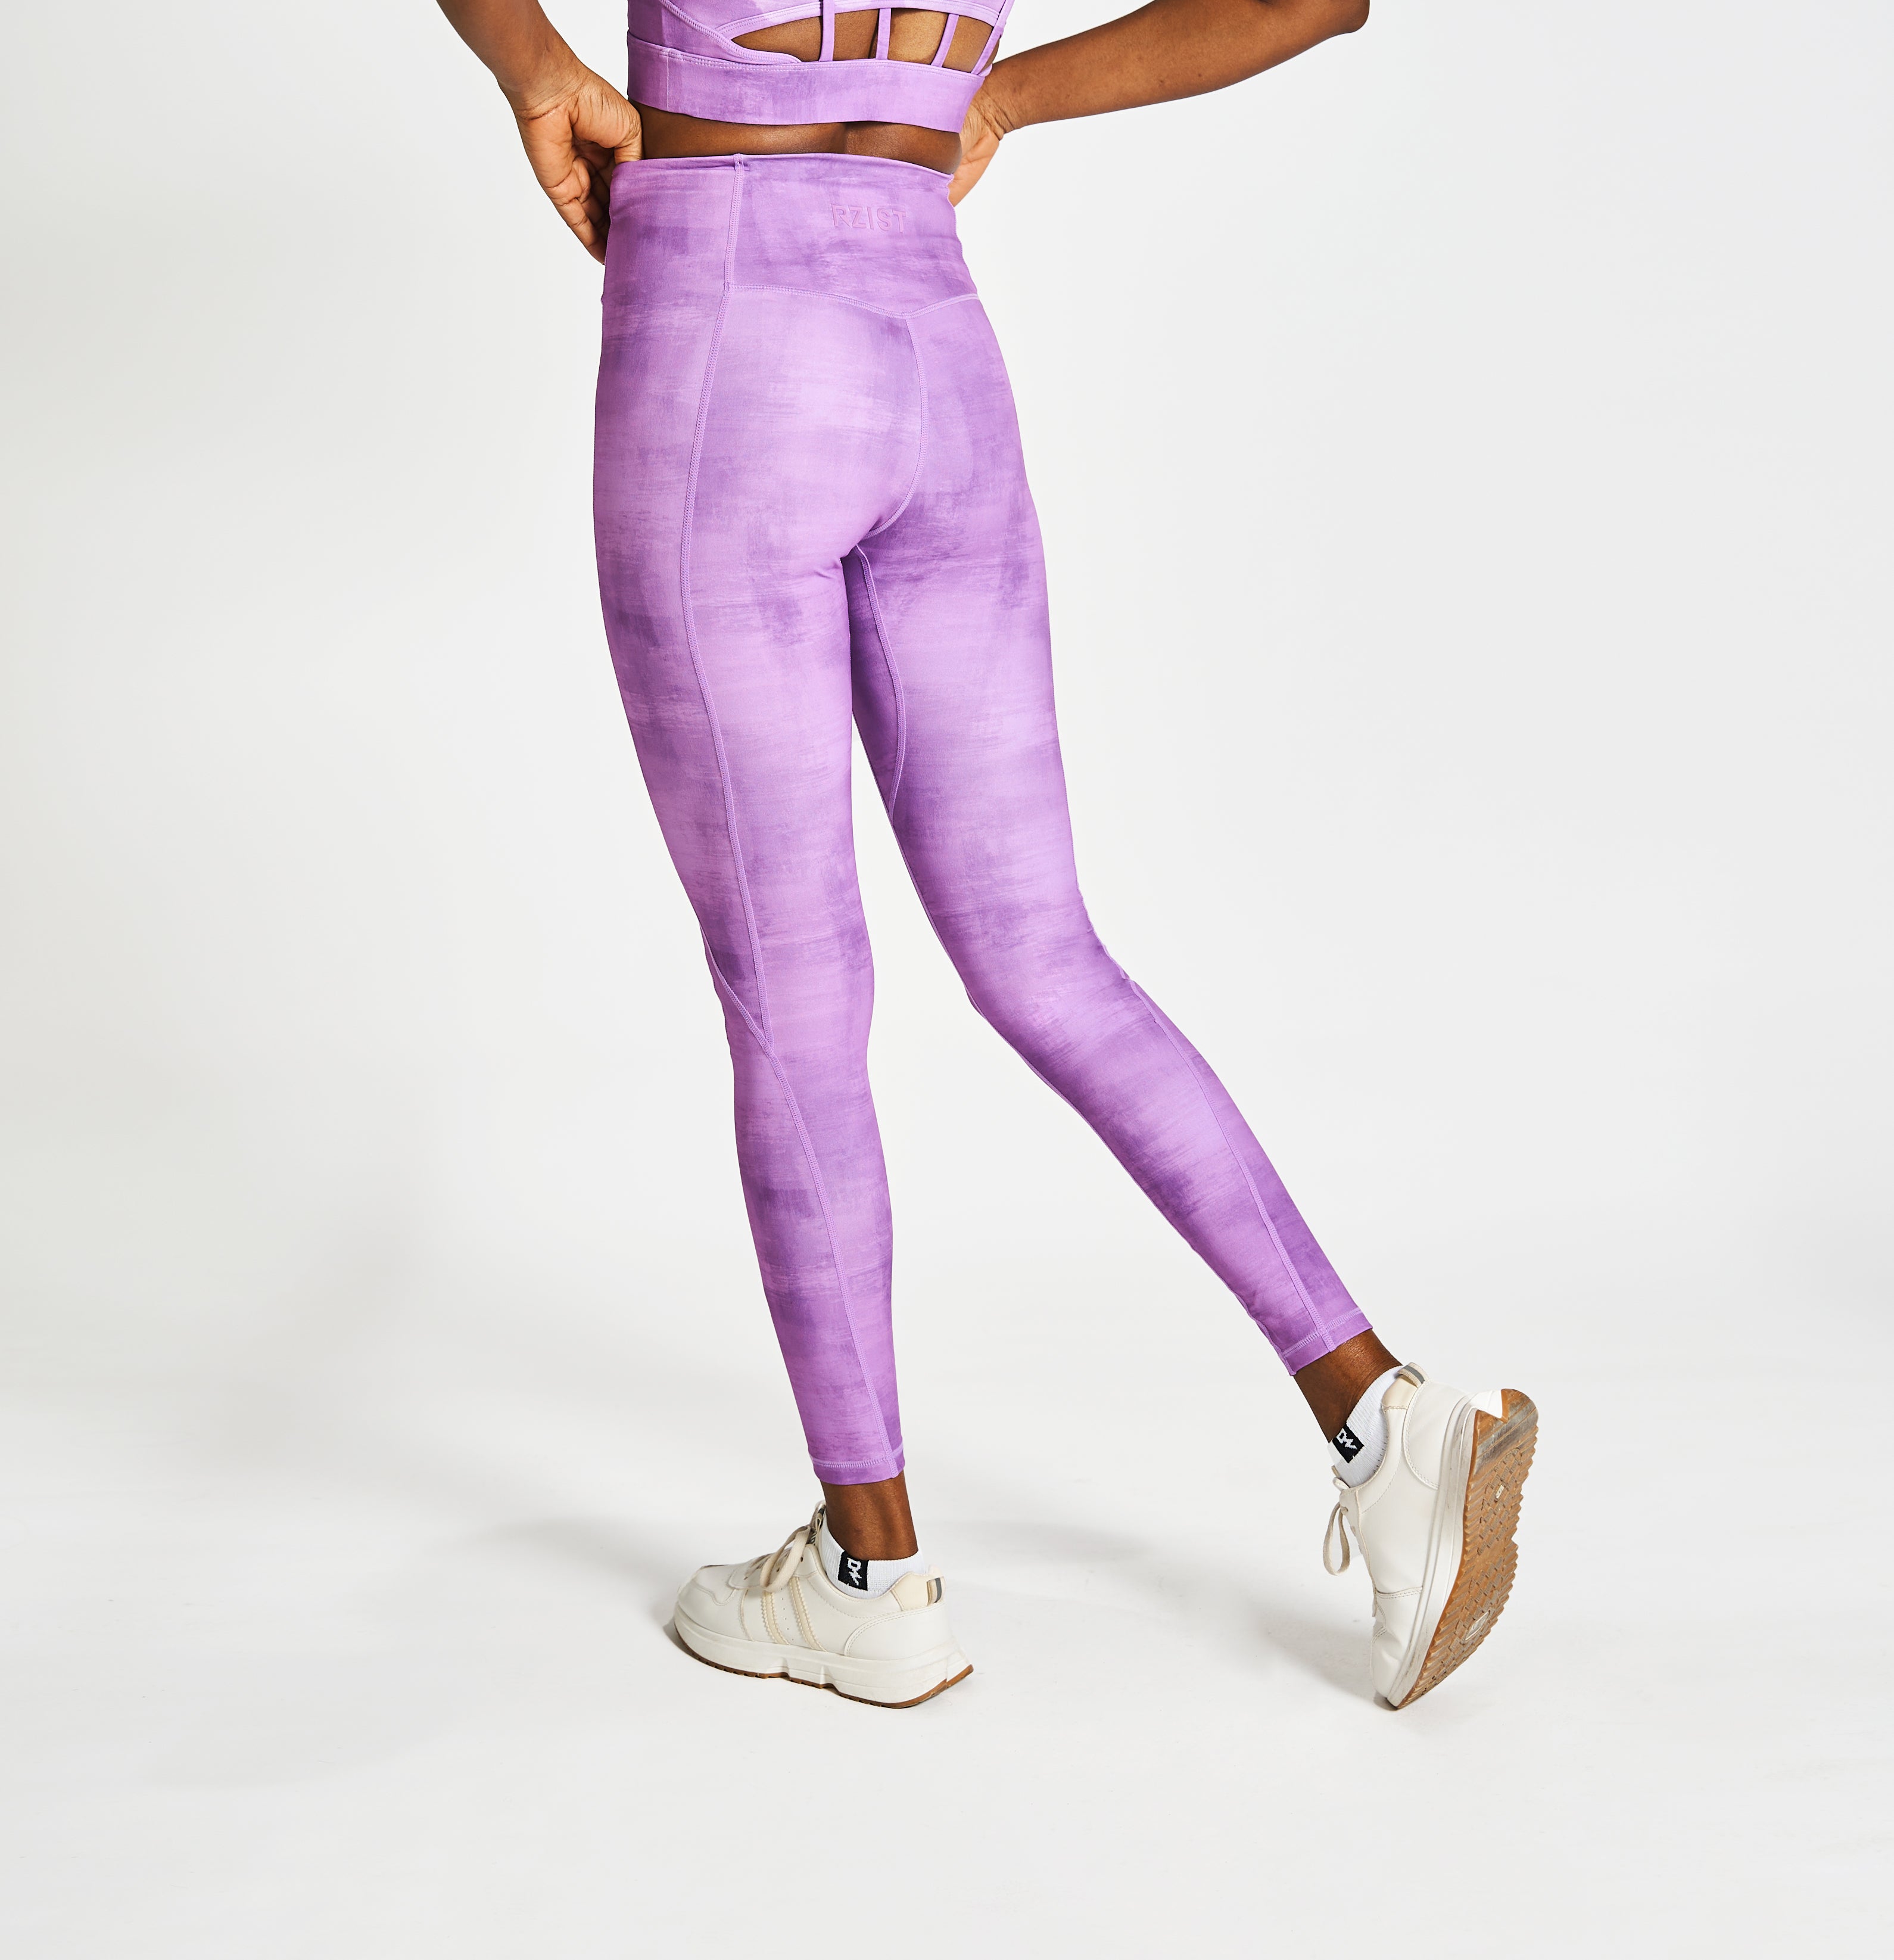 Leggings For Women's Workouts RZIST Purple Leggings